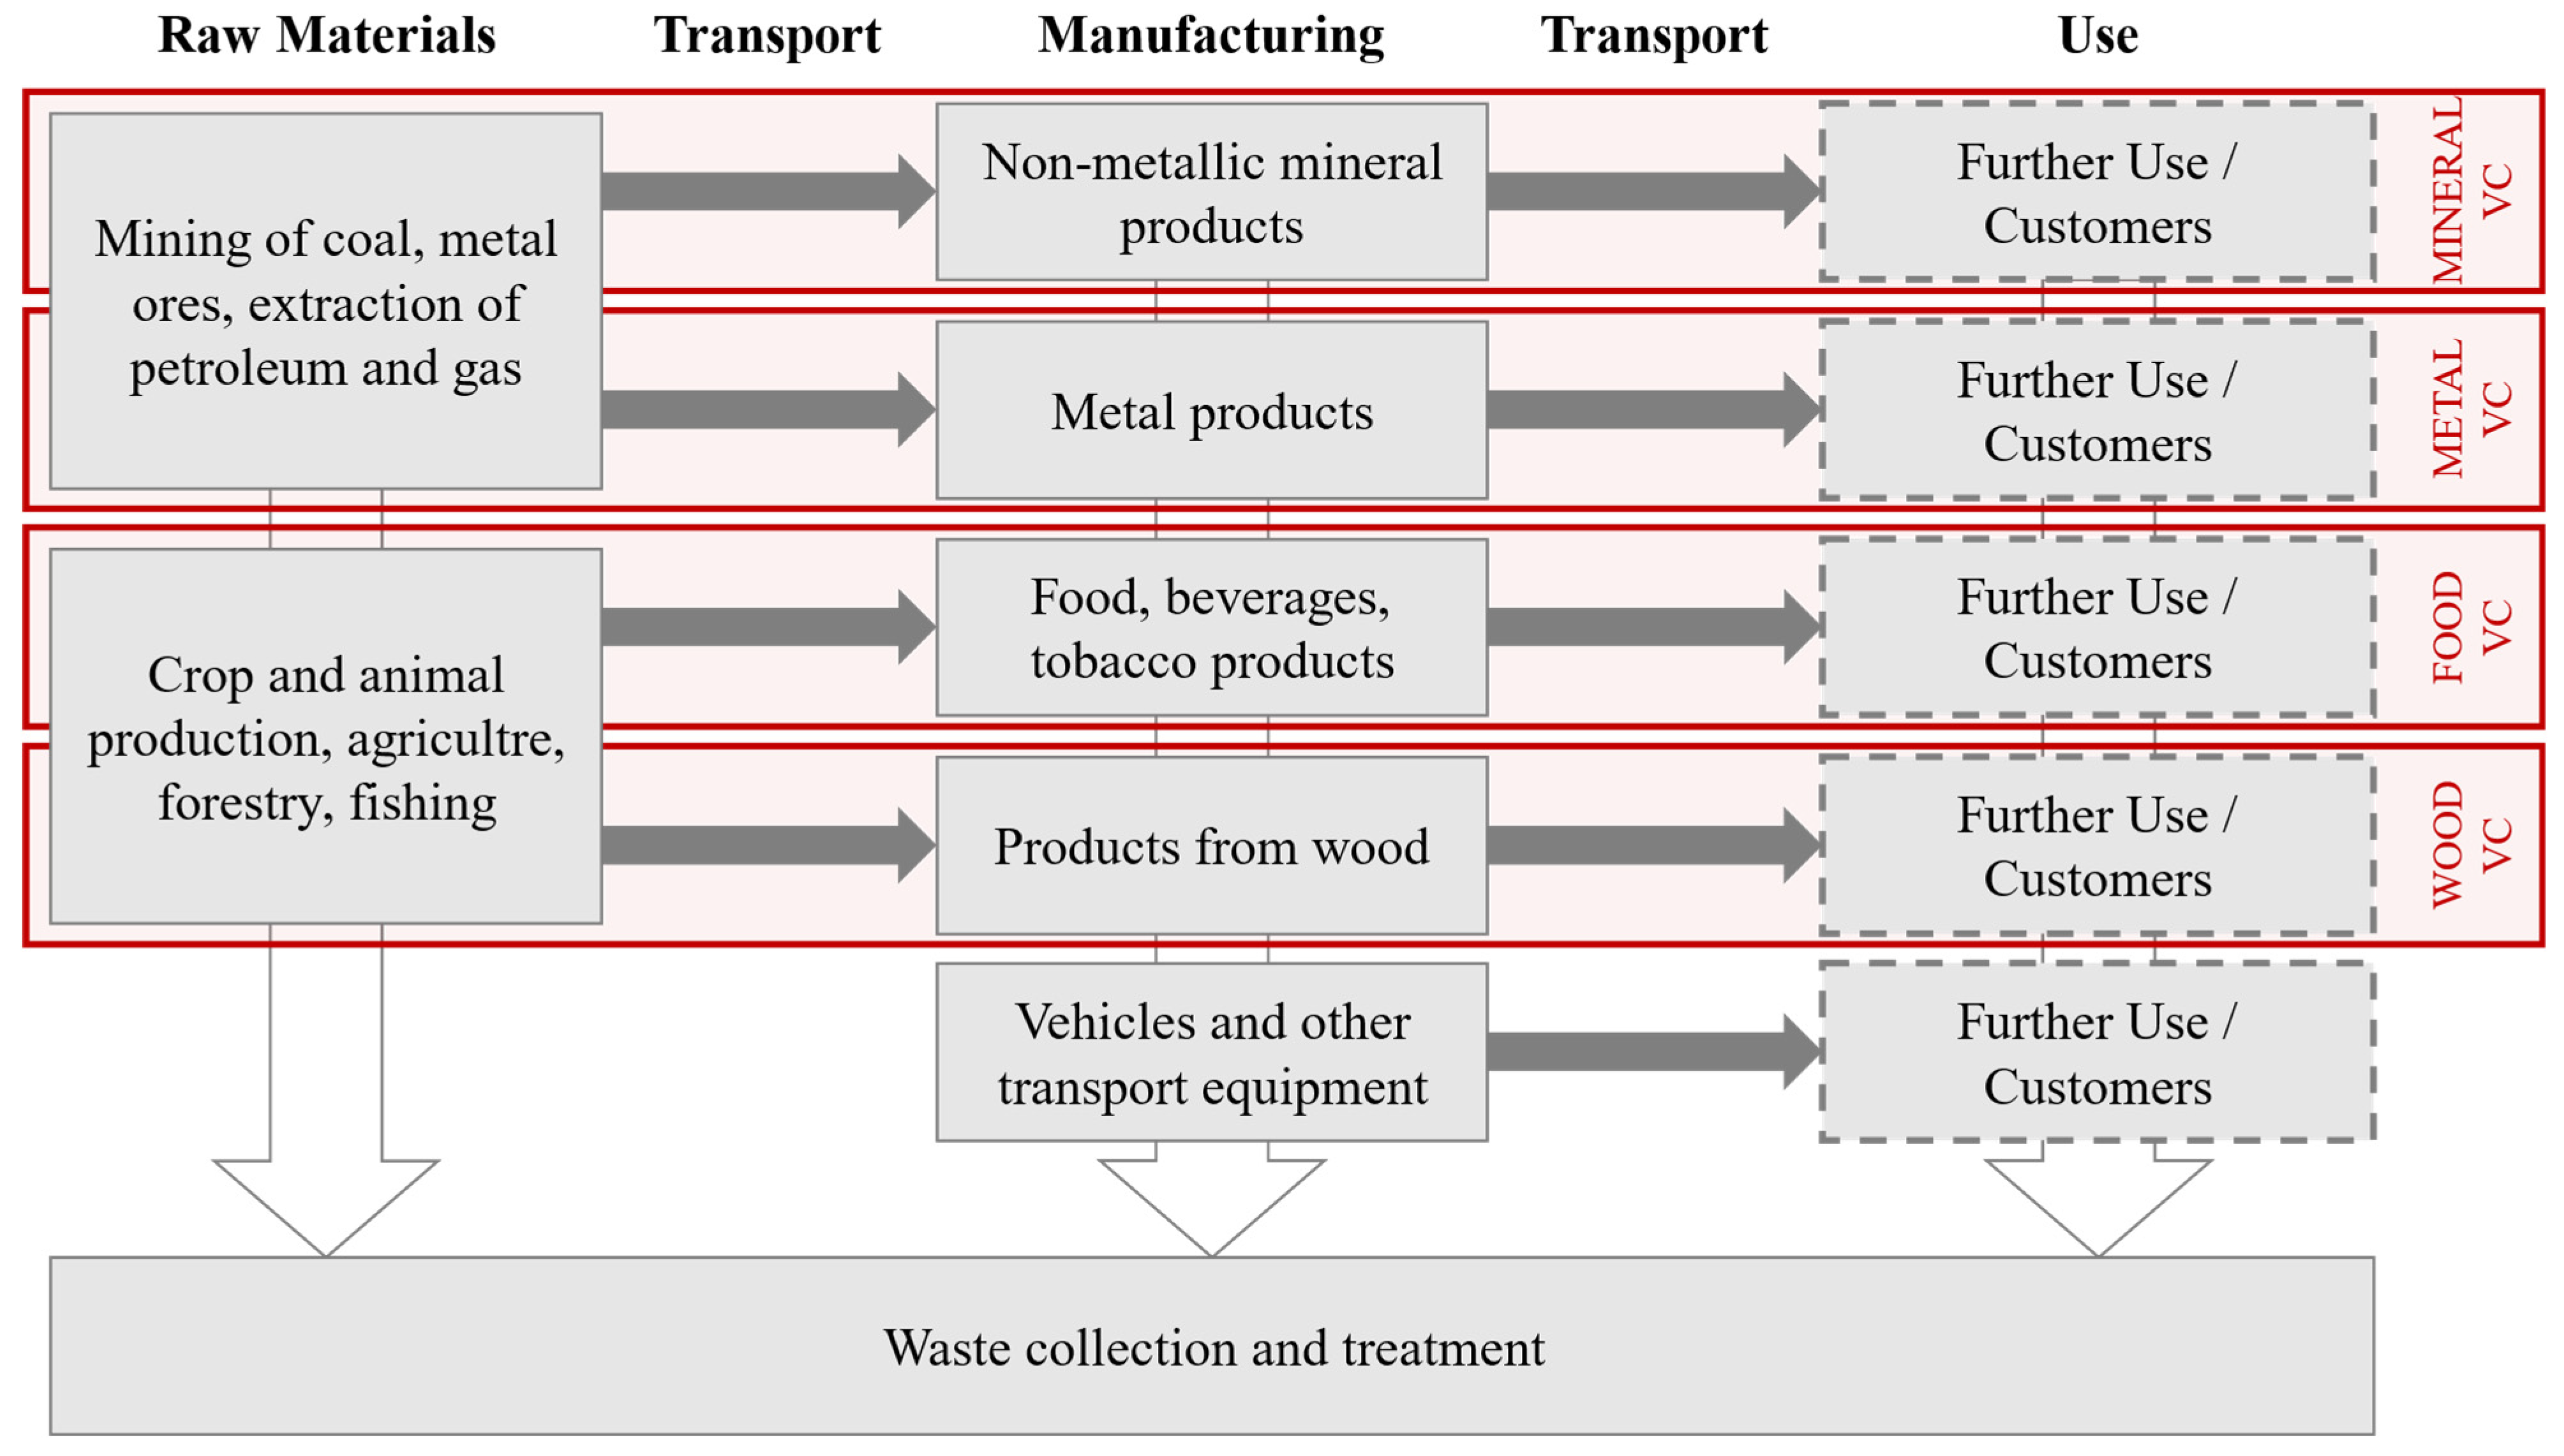 Die transportintensiven Branchen Österreichs und deren Emissionen